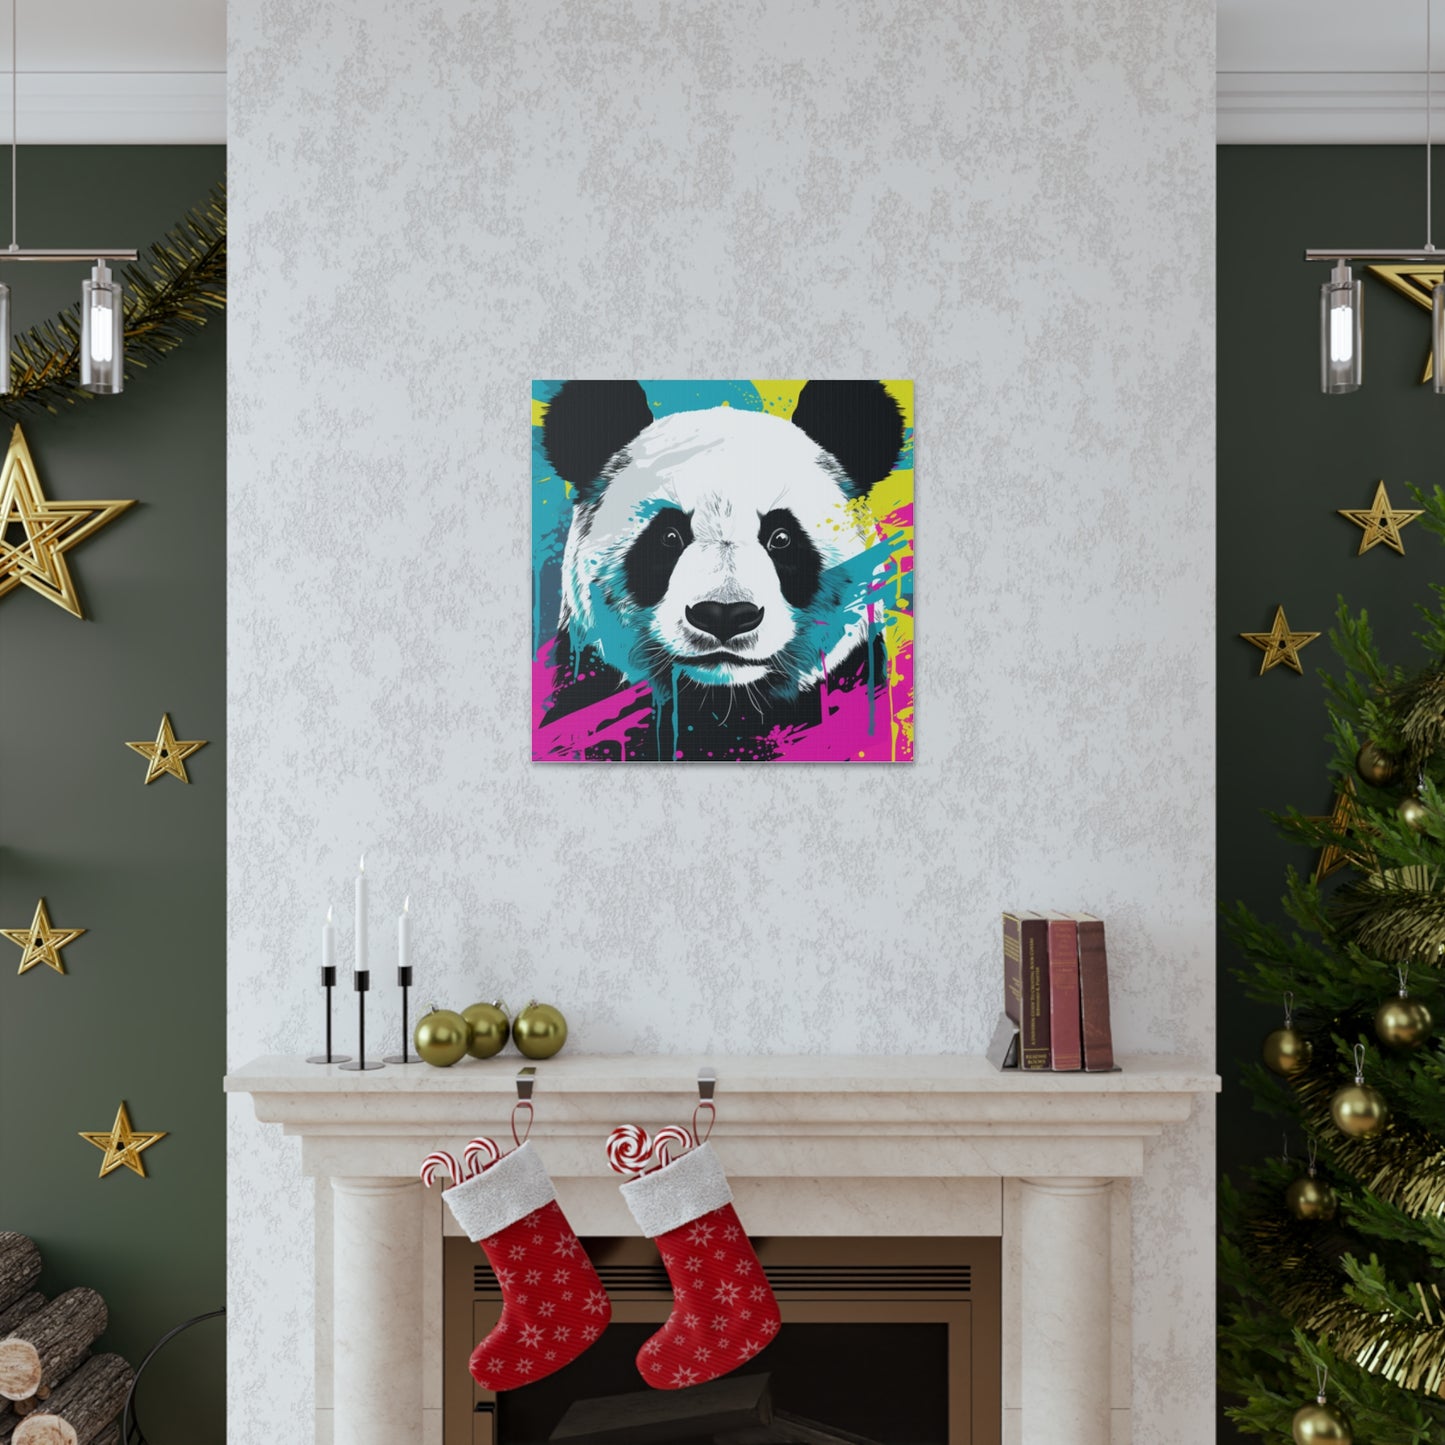 Panda Prints with a Neon Twist